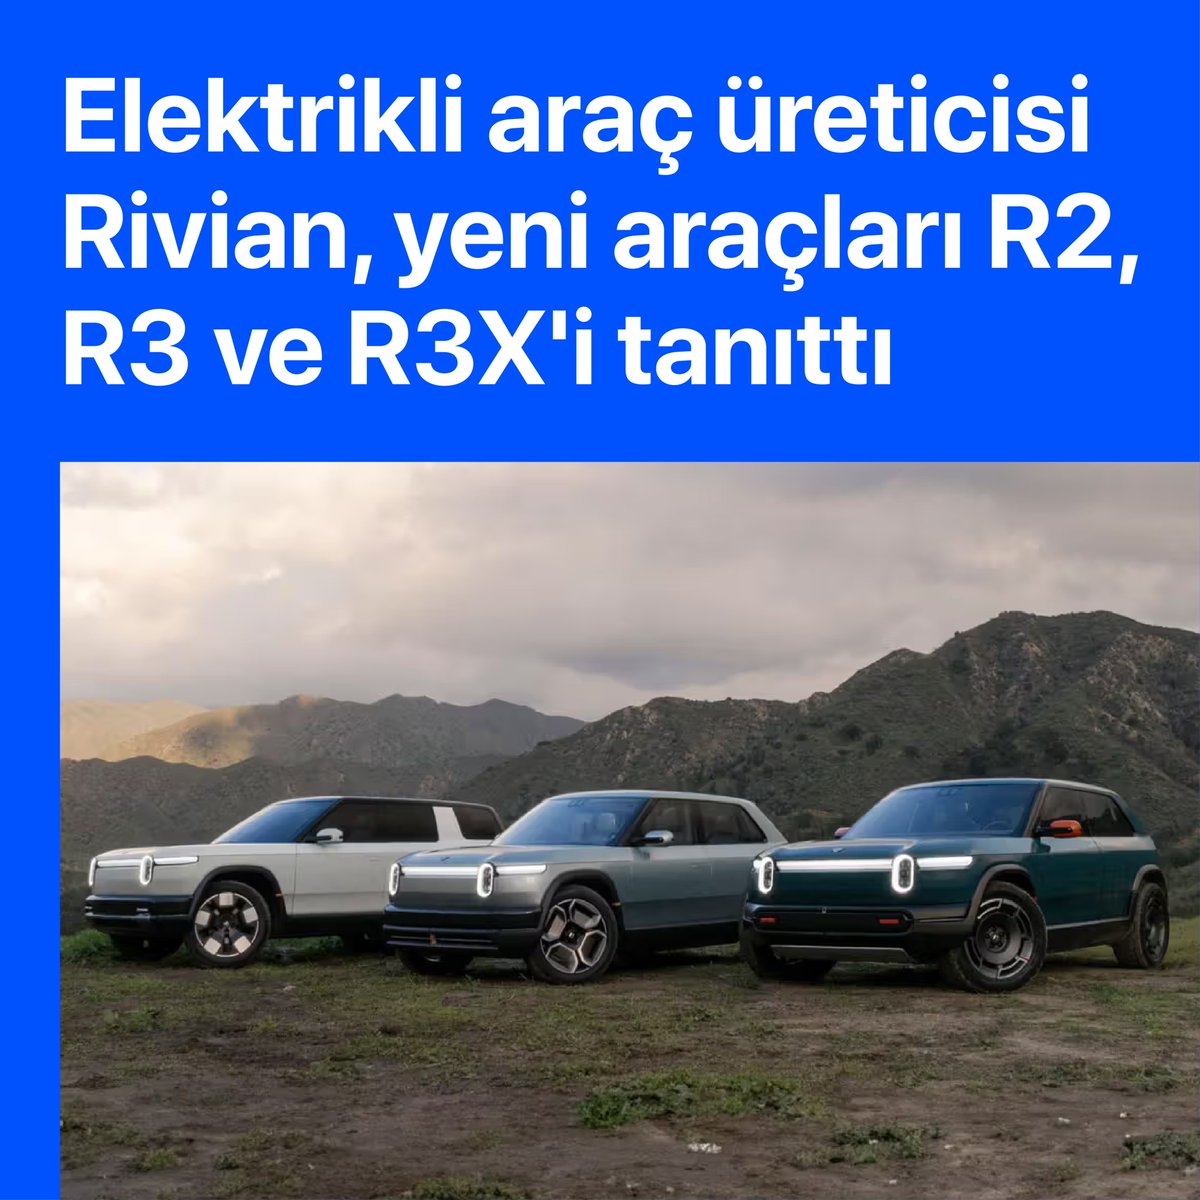 ABD merkezli elektrikli araç üreticisi Rivian, yeni orta ölçekli platform üzerine geliştirilen R2, R3 ve R3X’i tanıttı.

Detaylar: ispake.com/2024/03/10/riv…

#Rivian #RivianR2 #RivianR3 #RivianR3X #Otomobil #ElektrikliOtomobil #ElektrikliAraç #Tech #Technology #TechNews…